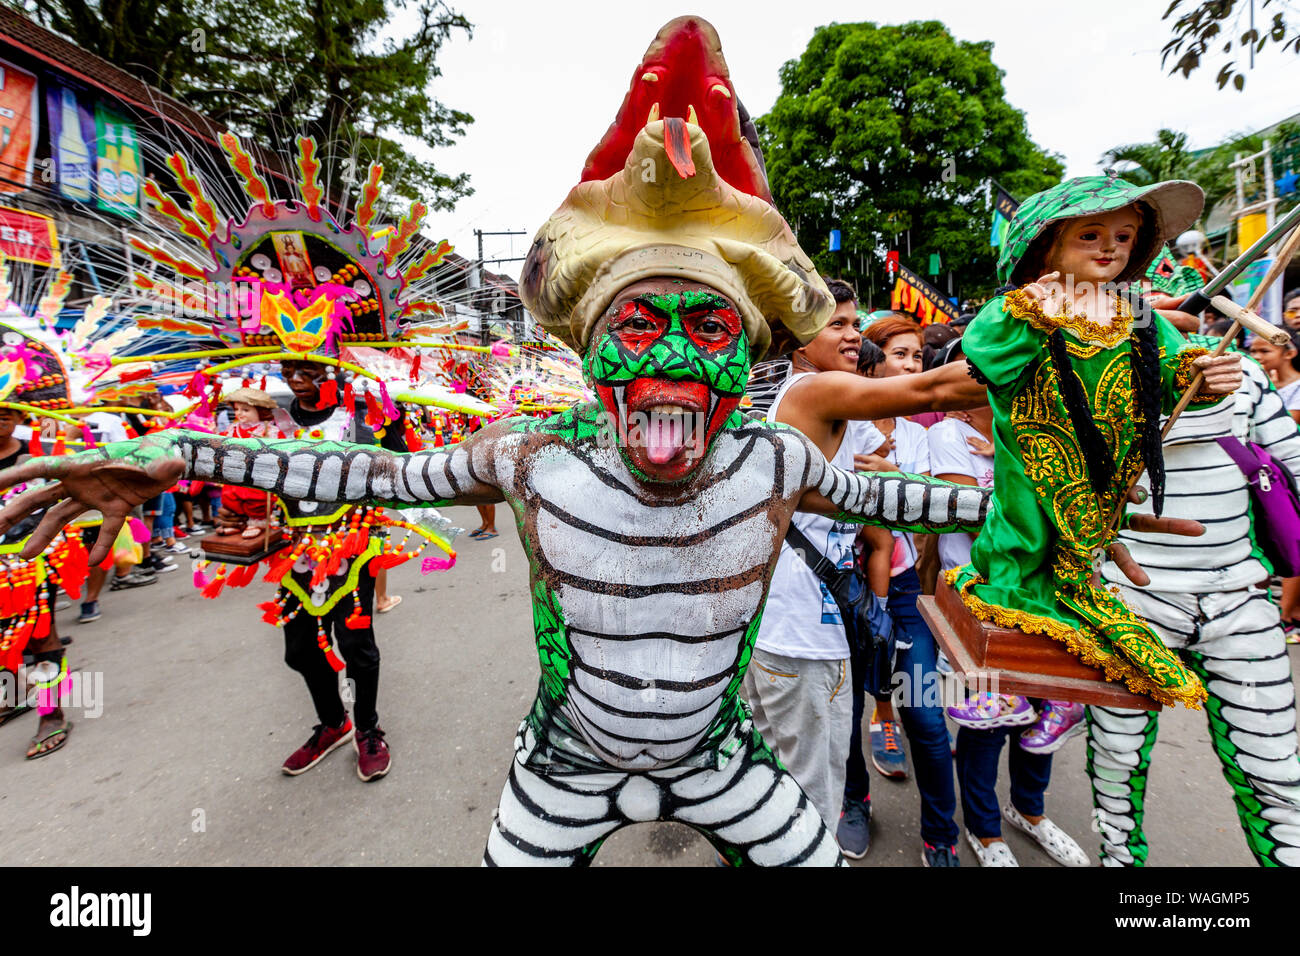 Les gens en costumes colorés Holding Santo Nino Statues parade dans les rues de Kalibo au cours de l'Ati-Atihan Festival, Kalibo, Philippines. Banque D'Images